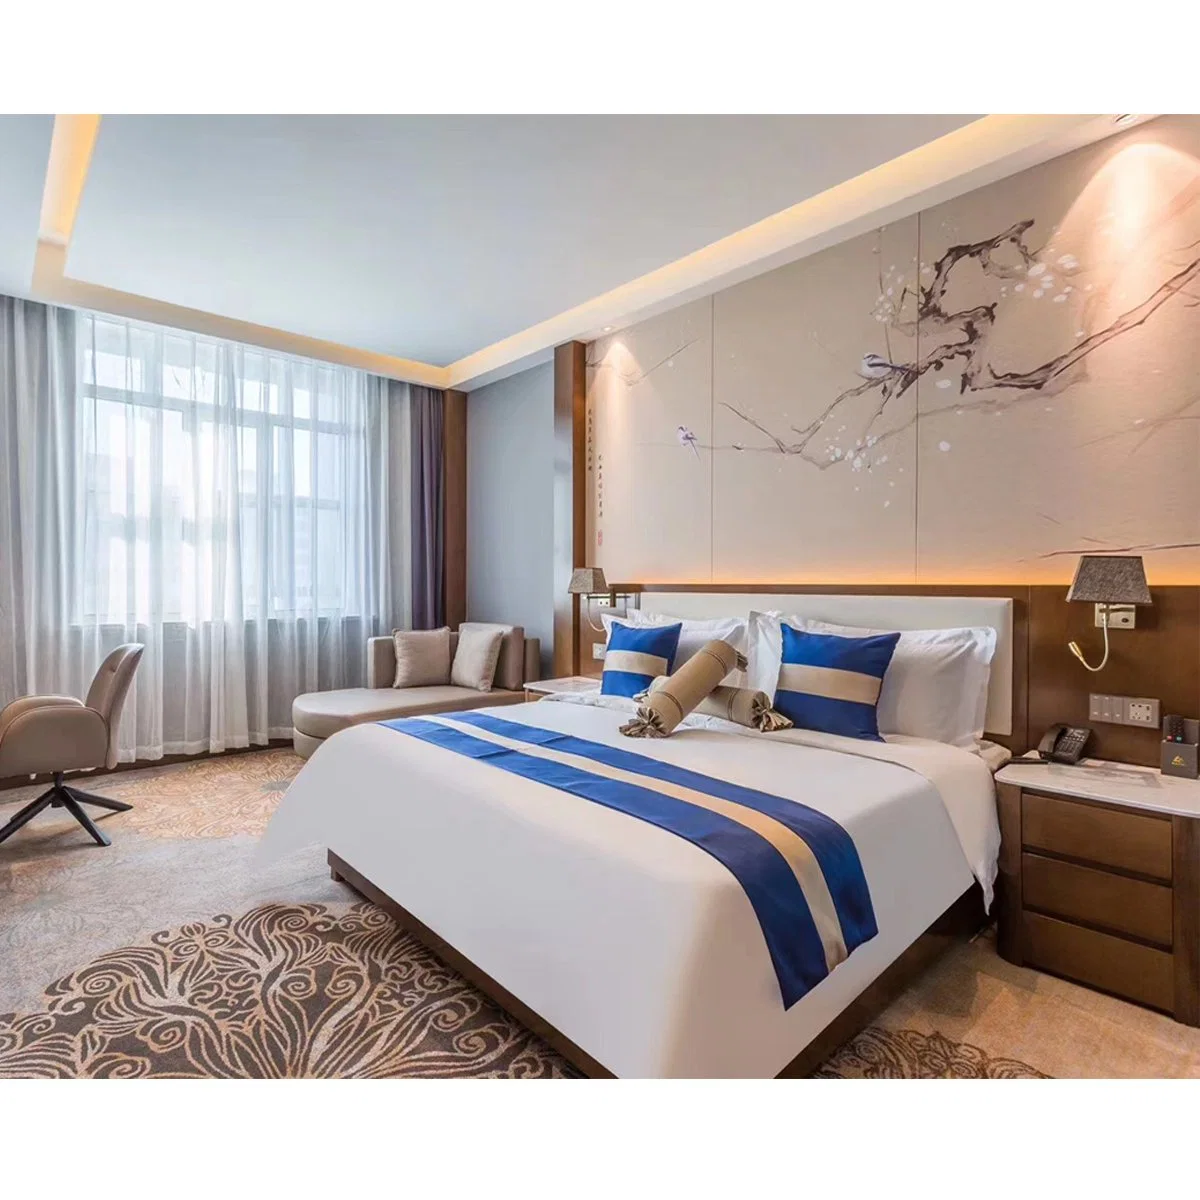 Quality Hampton Inn Economy Holiday Hotel com cama de casal e quarto branco Mobiliário